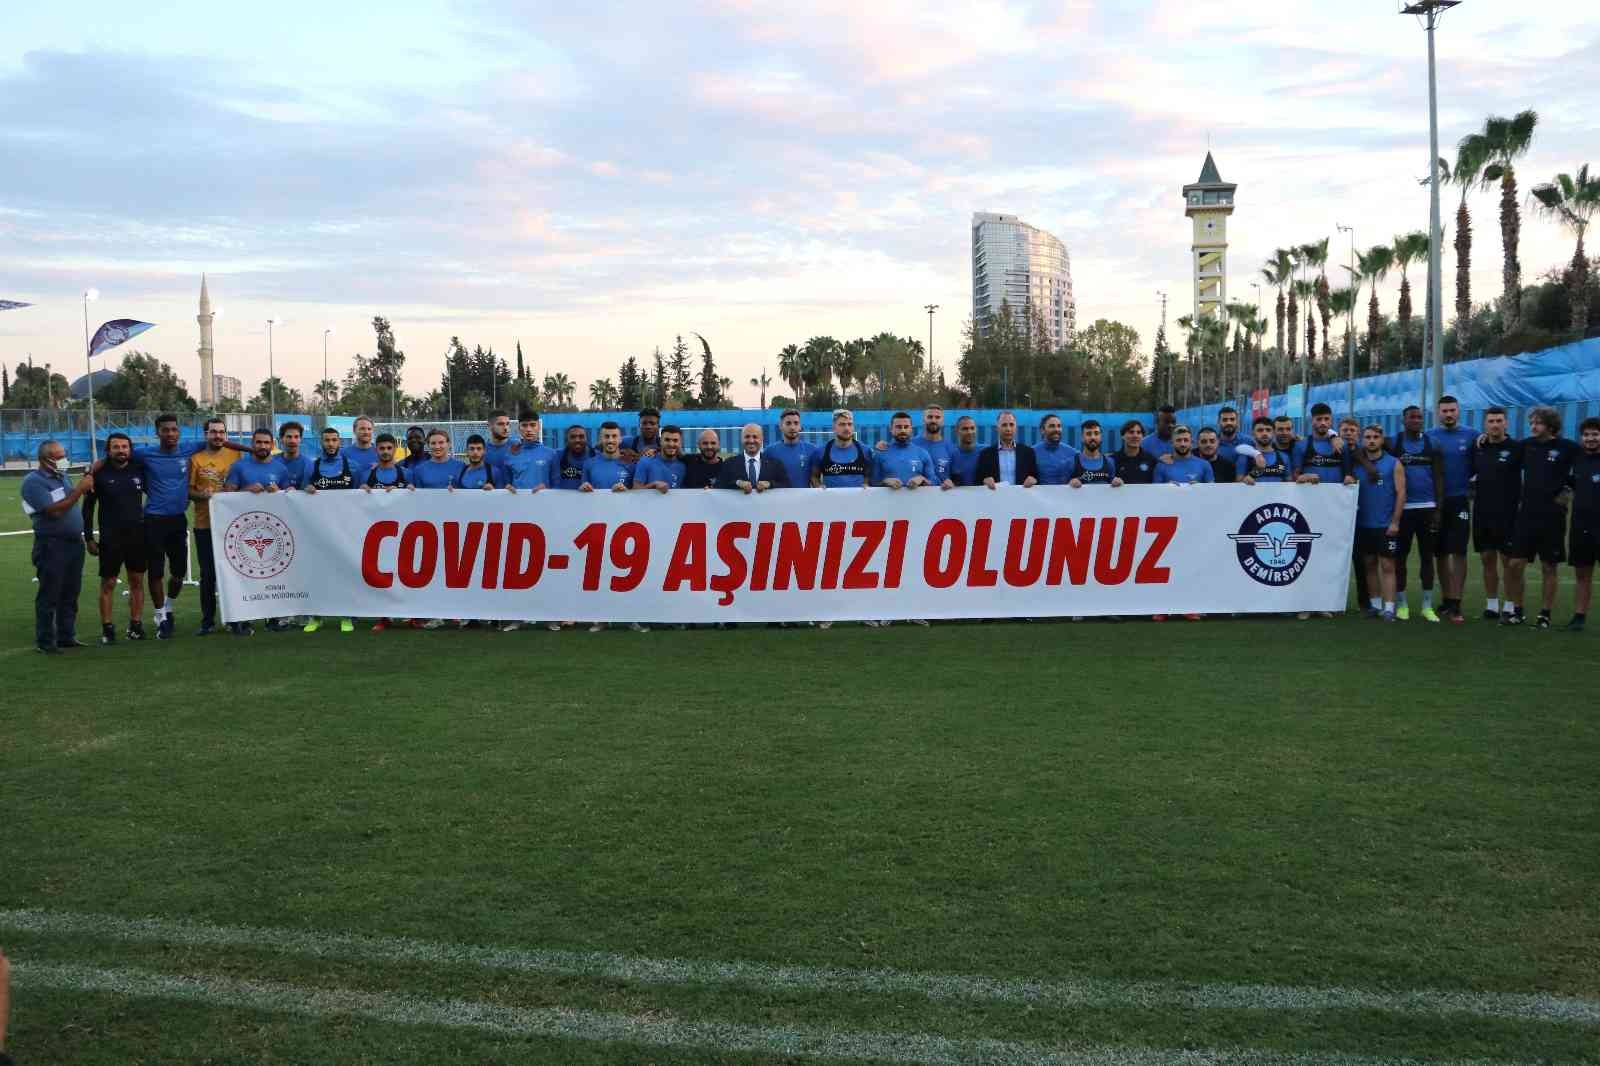 Adana Demirsporlu futbolcular korona virüs aşılamalarına destek verdi #adana